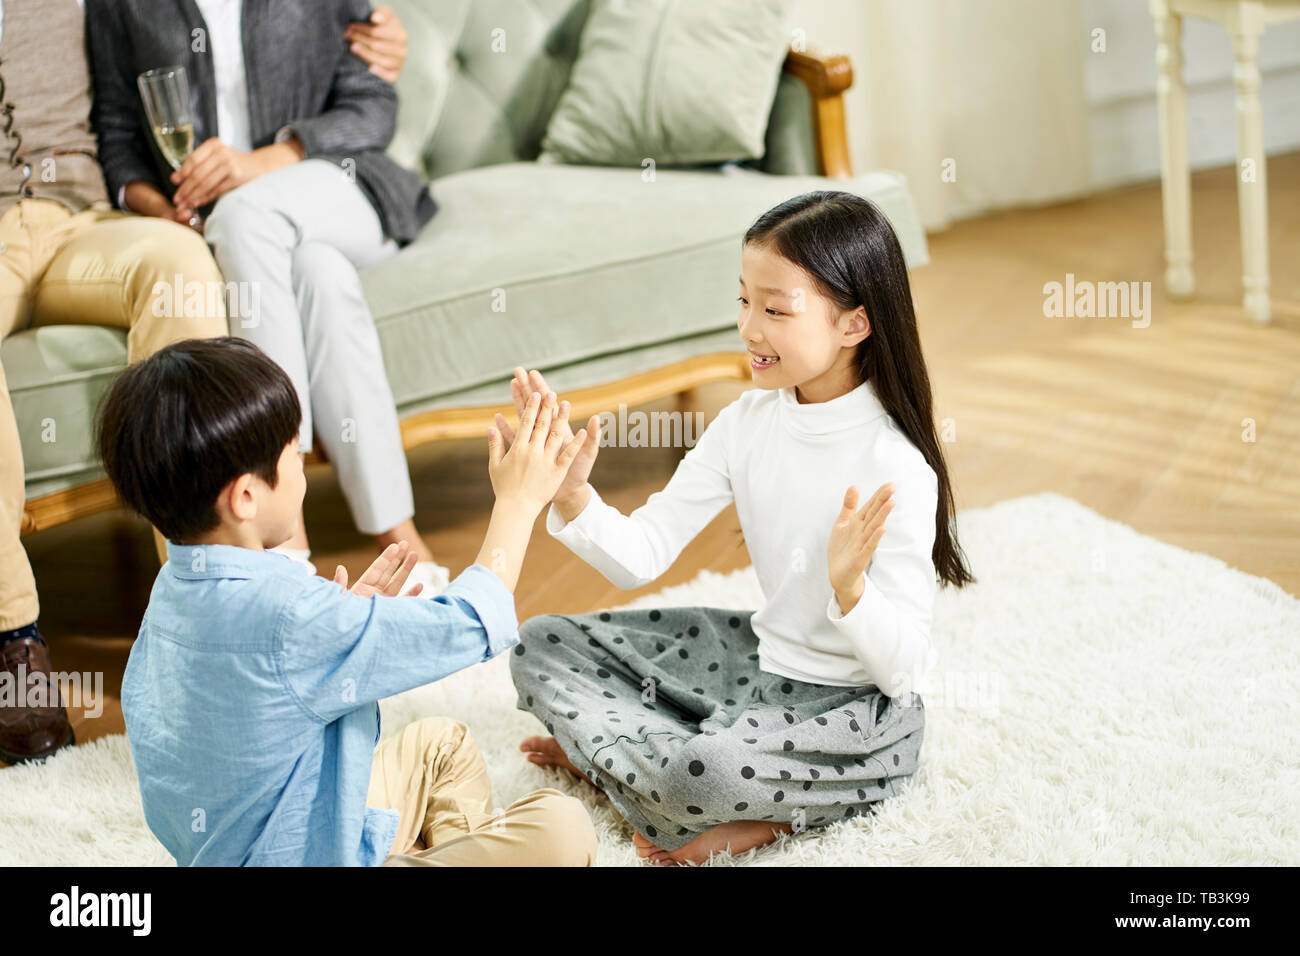 Deux enfants asiatiques mignon petit frère et sœur assis sur un tapis de jeu jouer avec parent assis sur un canapé à l'arrière-plan Banque D'Images